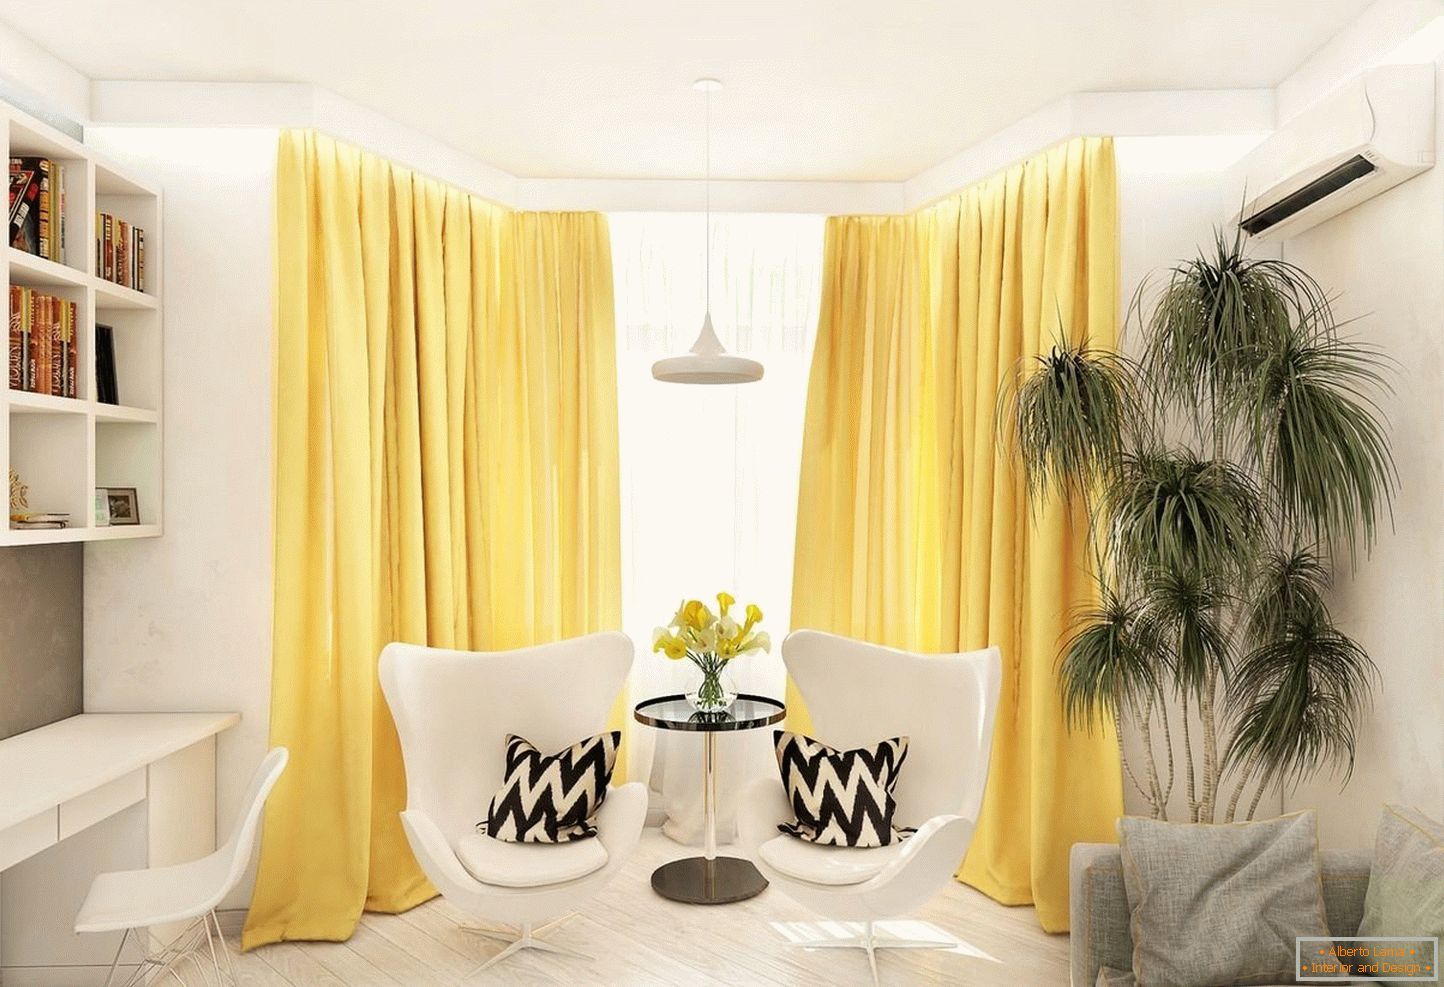 Rumene zavese v beli dnevni sobi